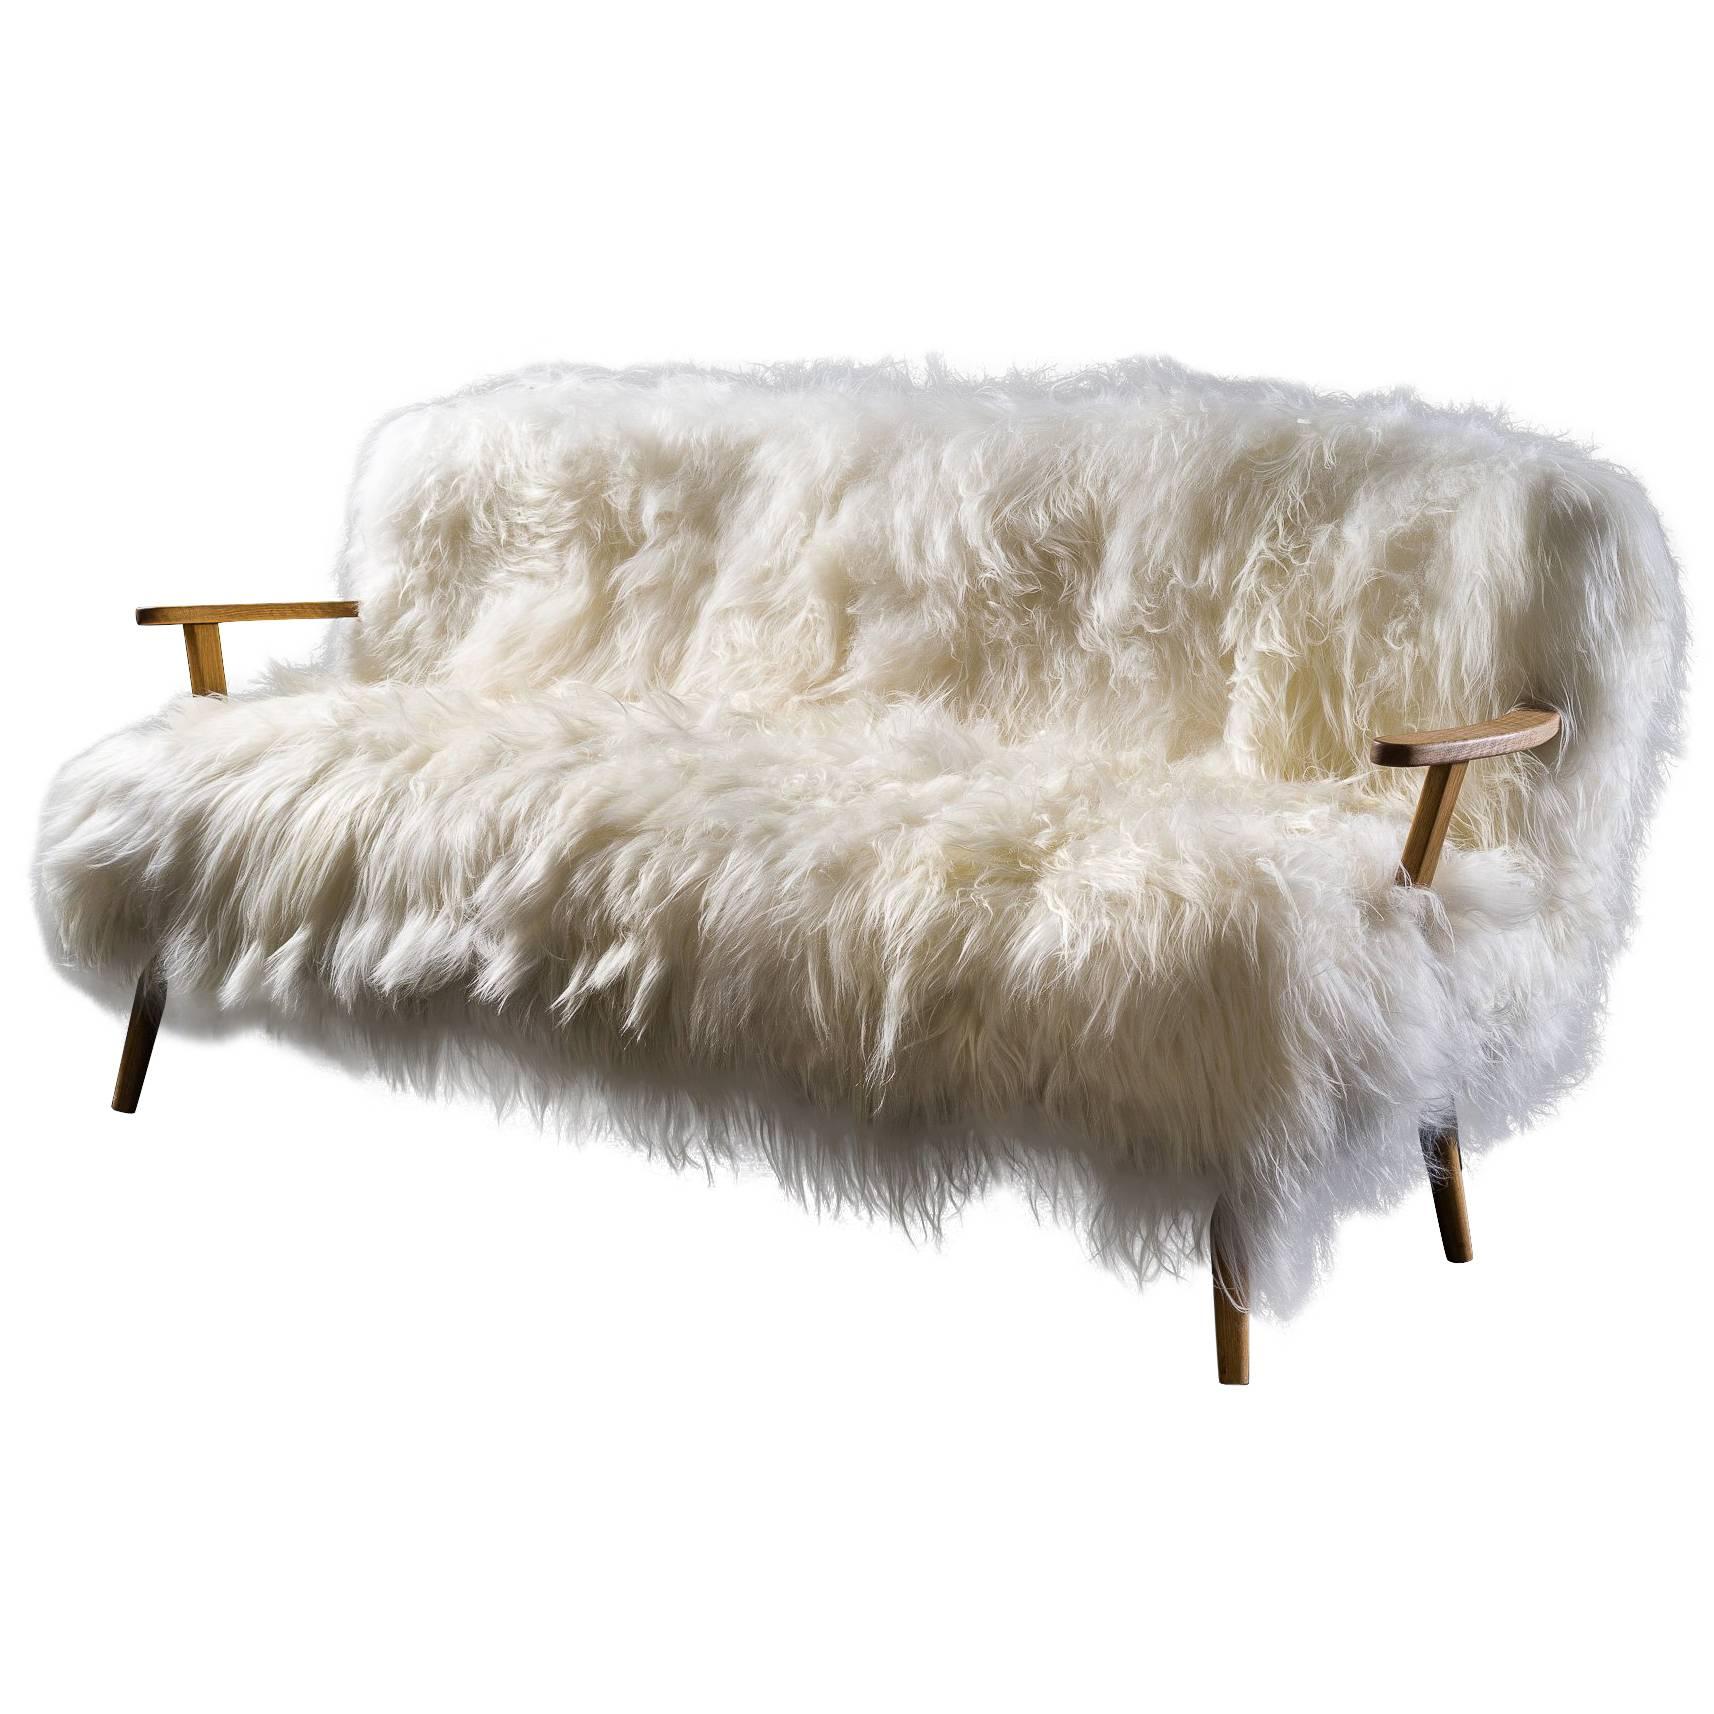 Sheepskin Sofa Collection "Alpina" For Sale